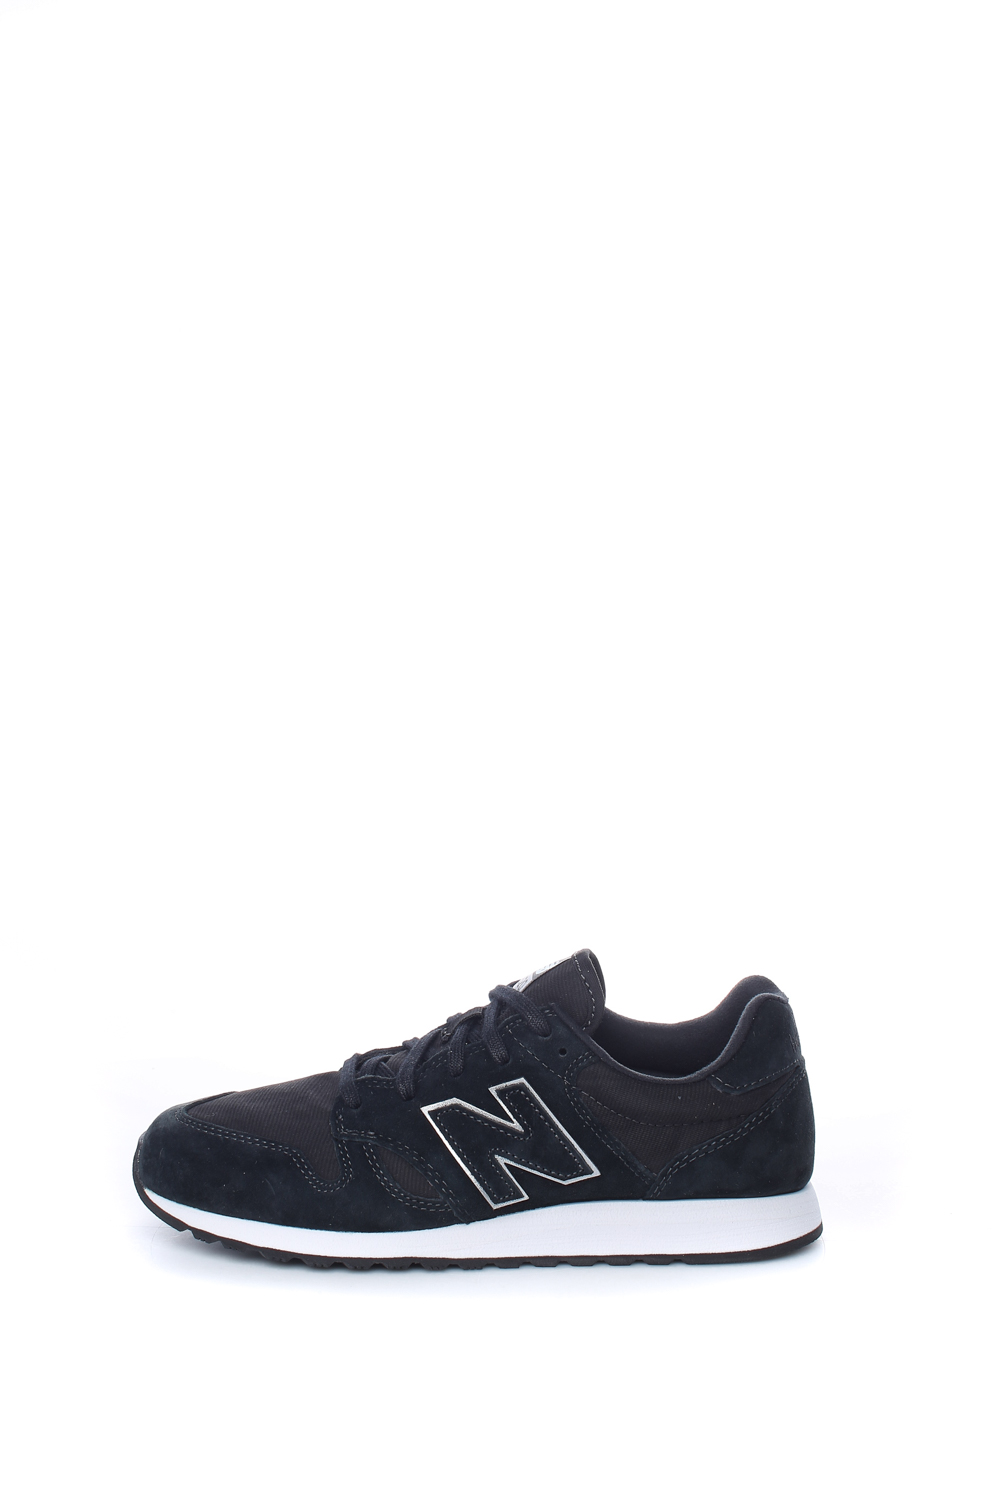 Γυναικεία/Παπούτσια/Sneakers NEW BALANCE - Γυναικεία sneakers New Balance 520 μαύρα